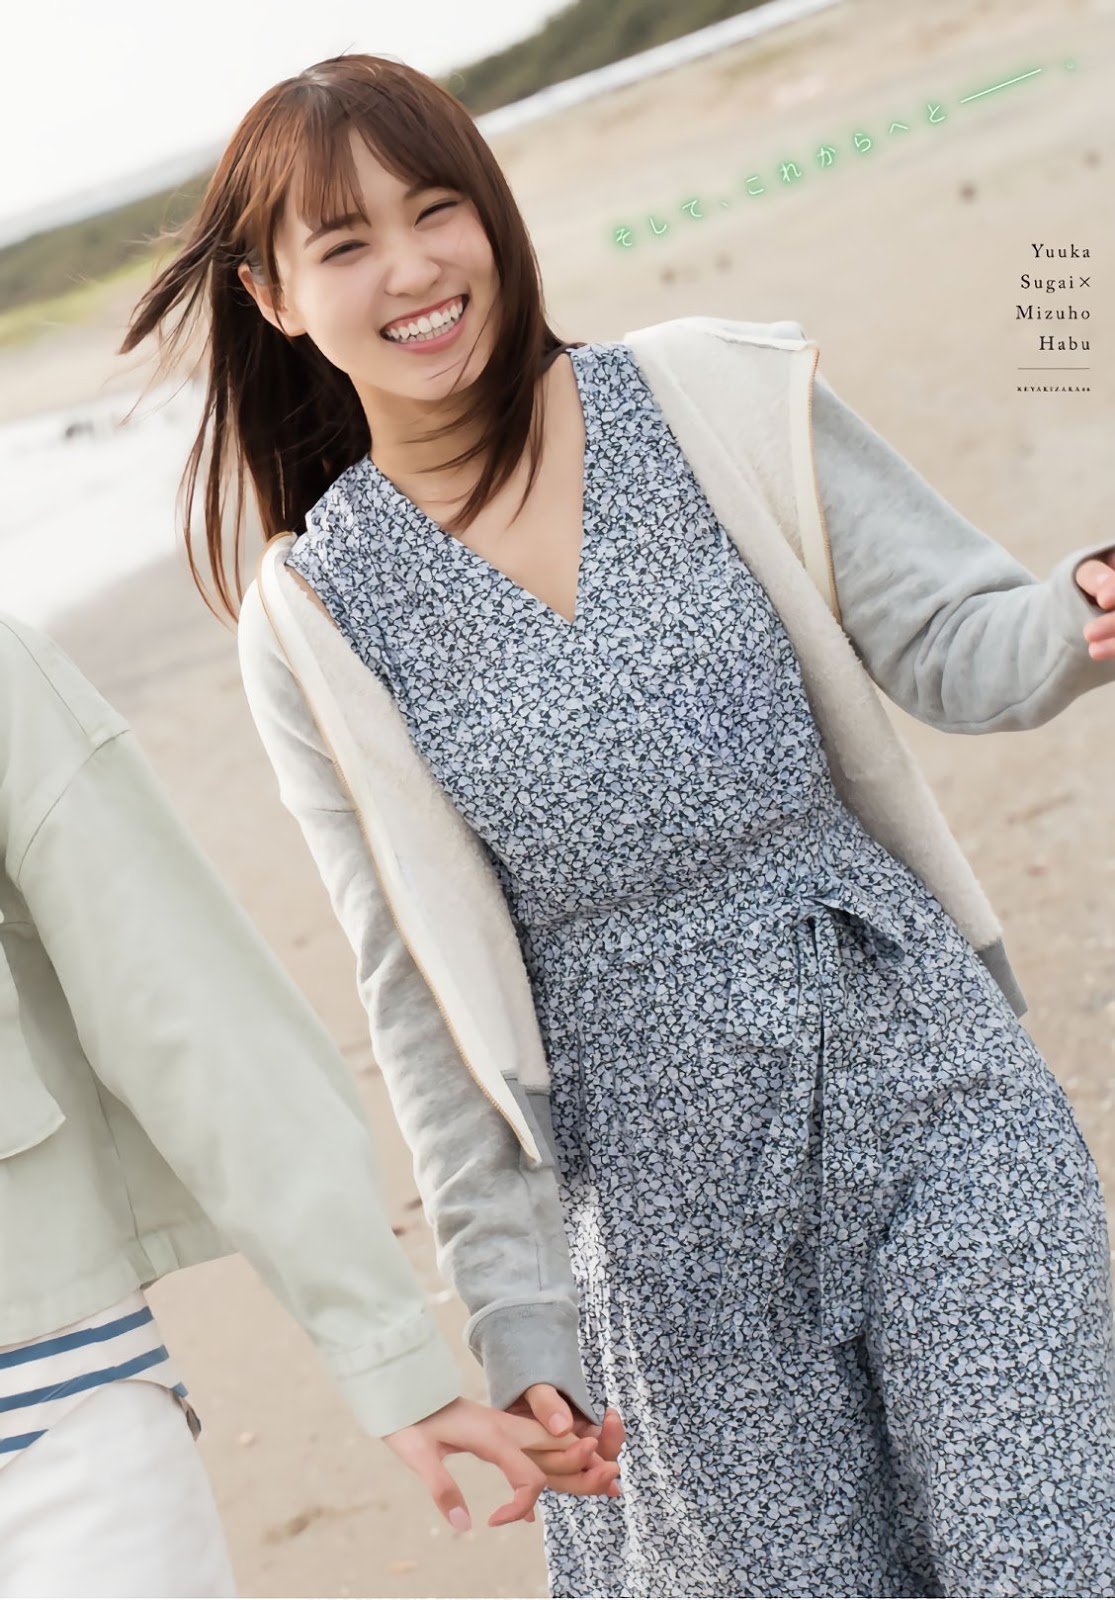 Yuuka Sugai 菅井友香, Mizuho Habu 土生瑞穂, Shonen Magazine 2019 No.28 (少年マガジン 2019年28号)